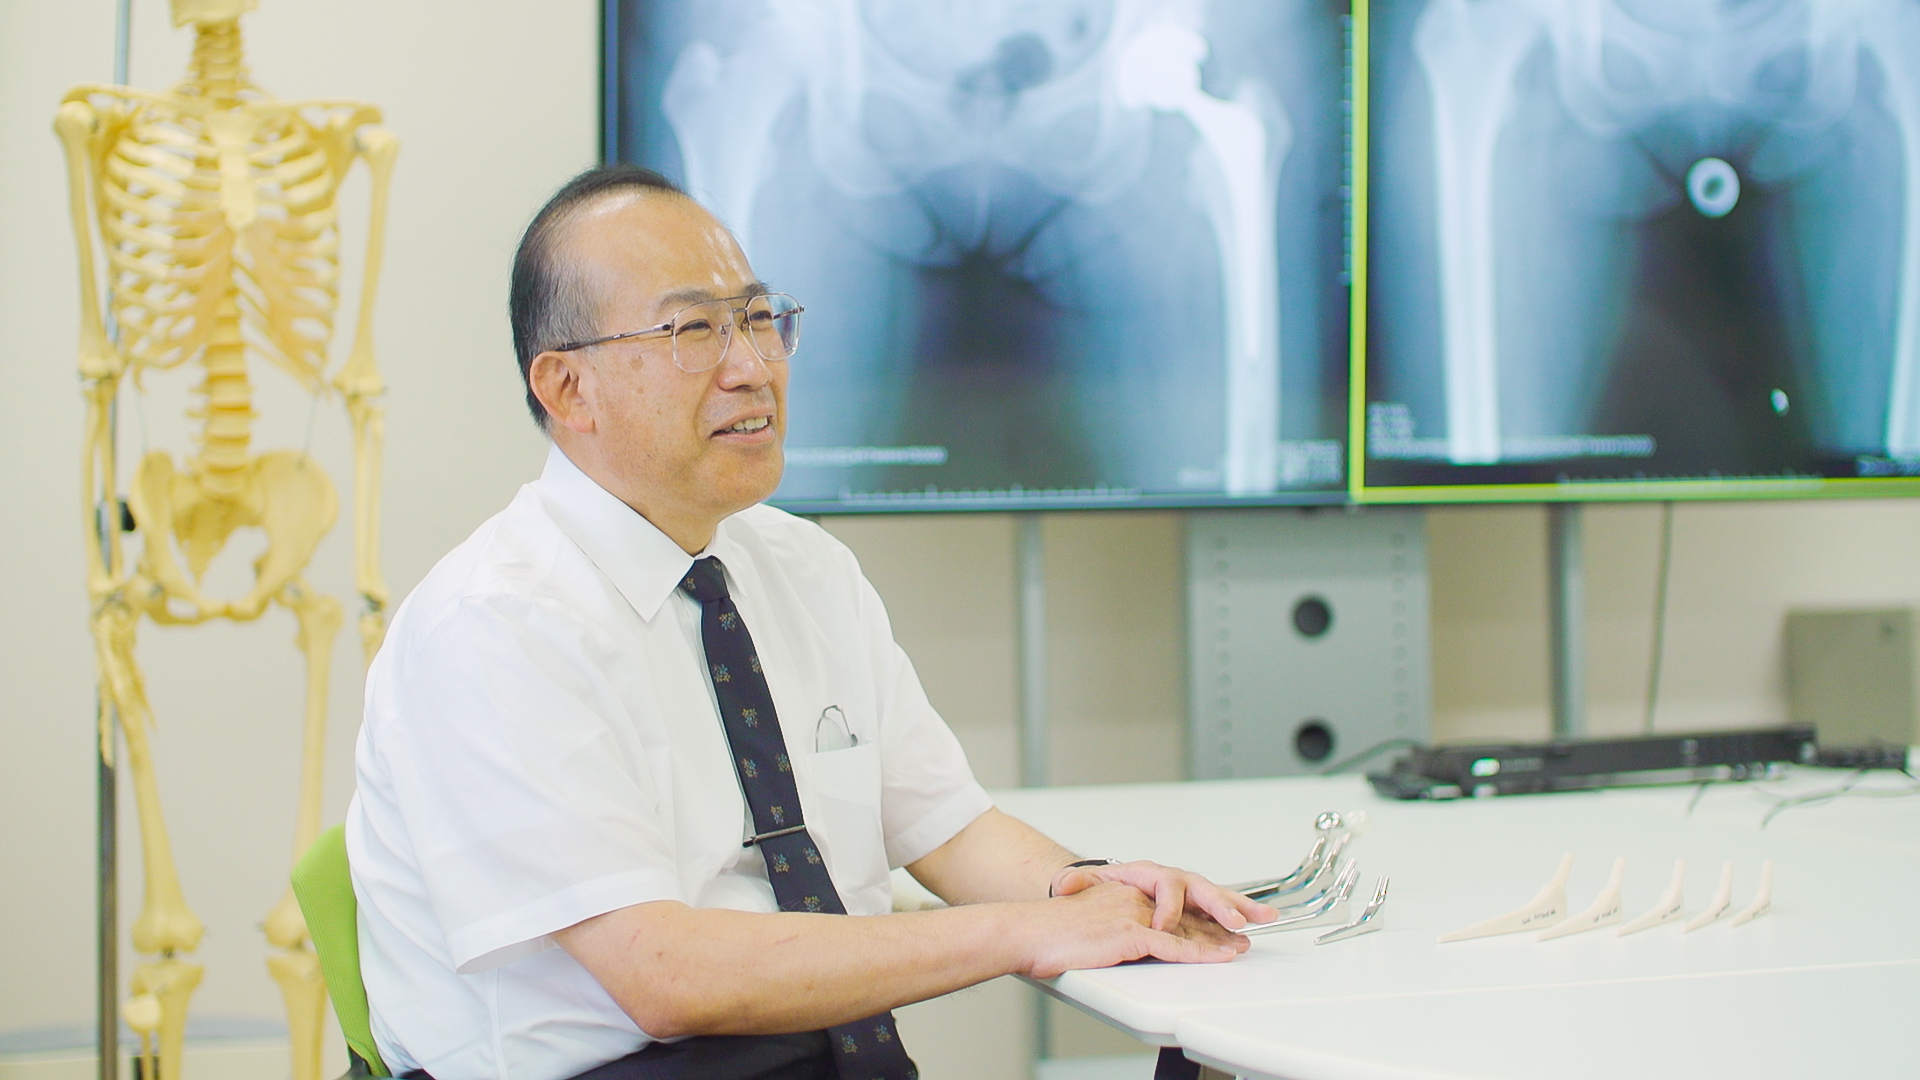 高木理彰 教授（医学部担当）<br>
「人工股関節手術の長期成績を向上させるために」<br>
の画像